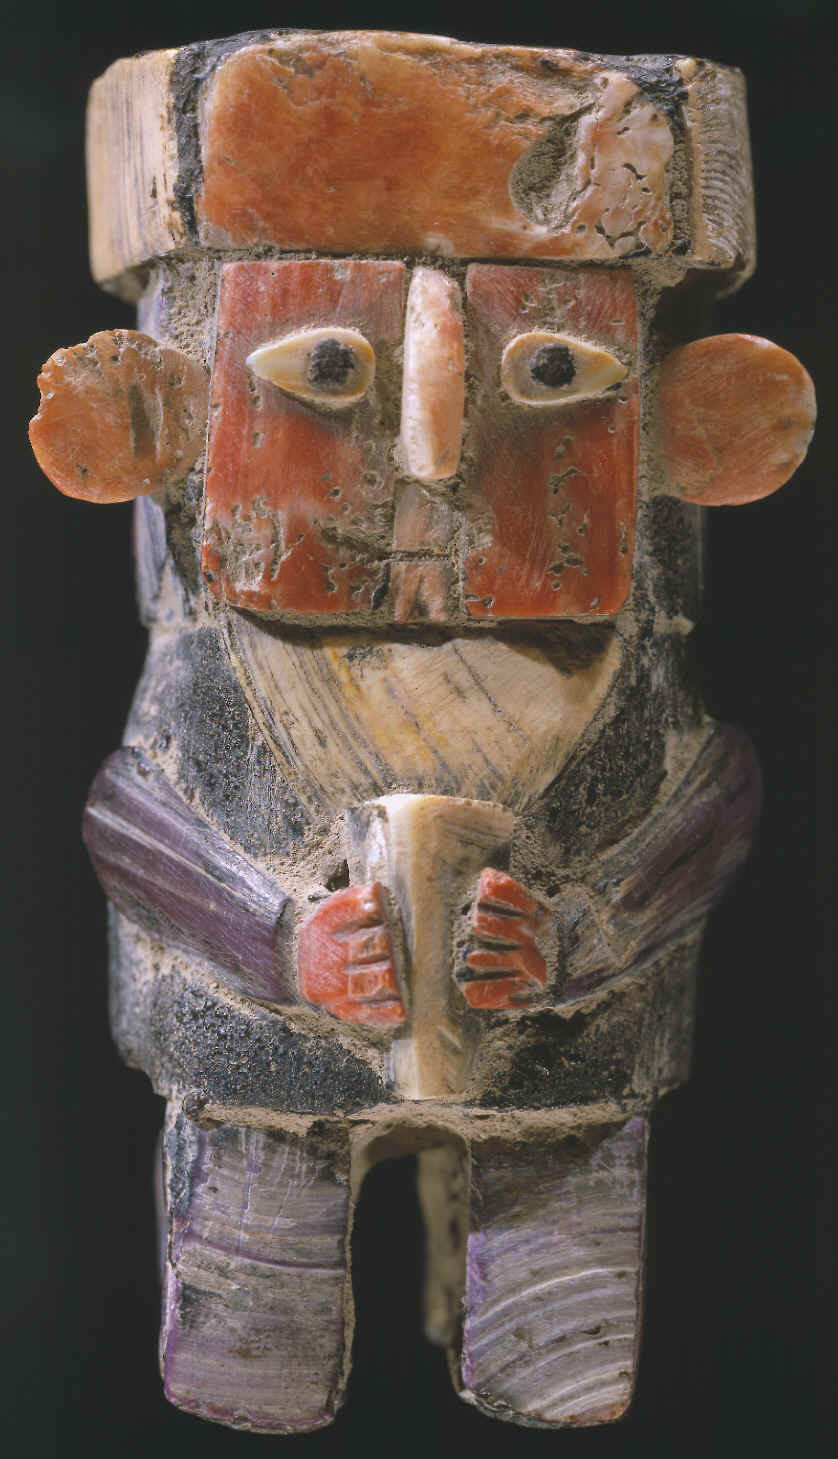 Inca culture carved human male figure.